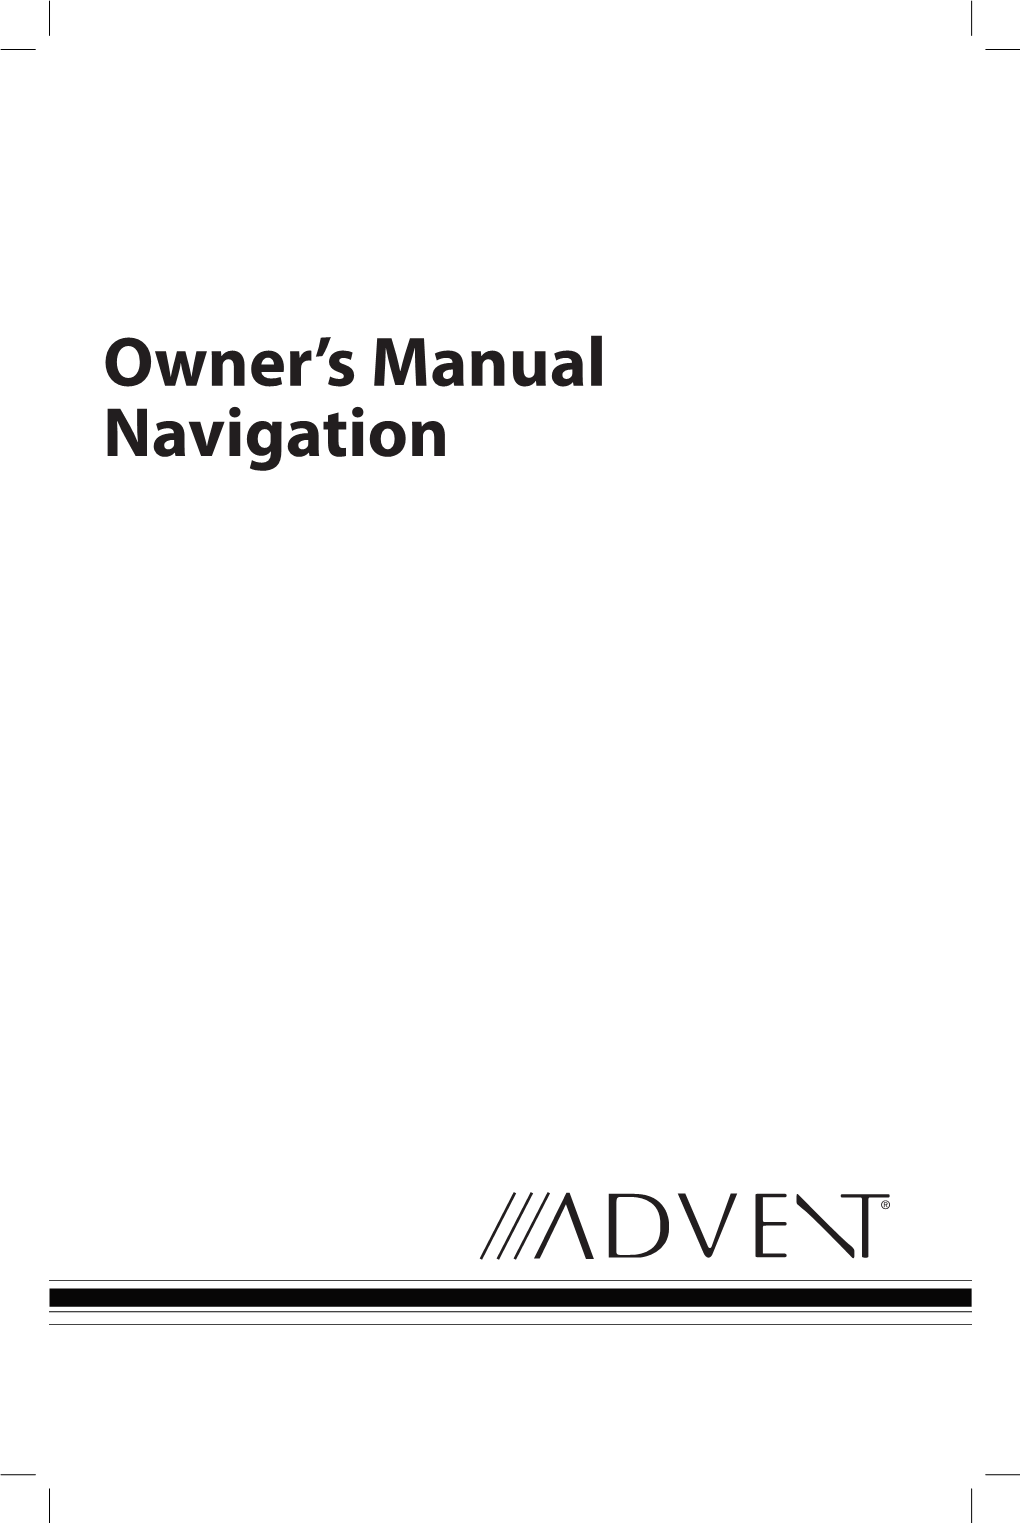 Owner's Manual Navigation